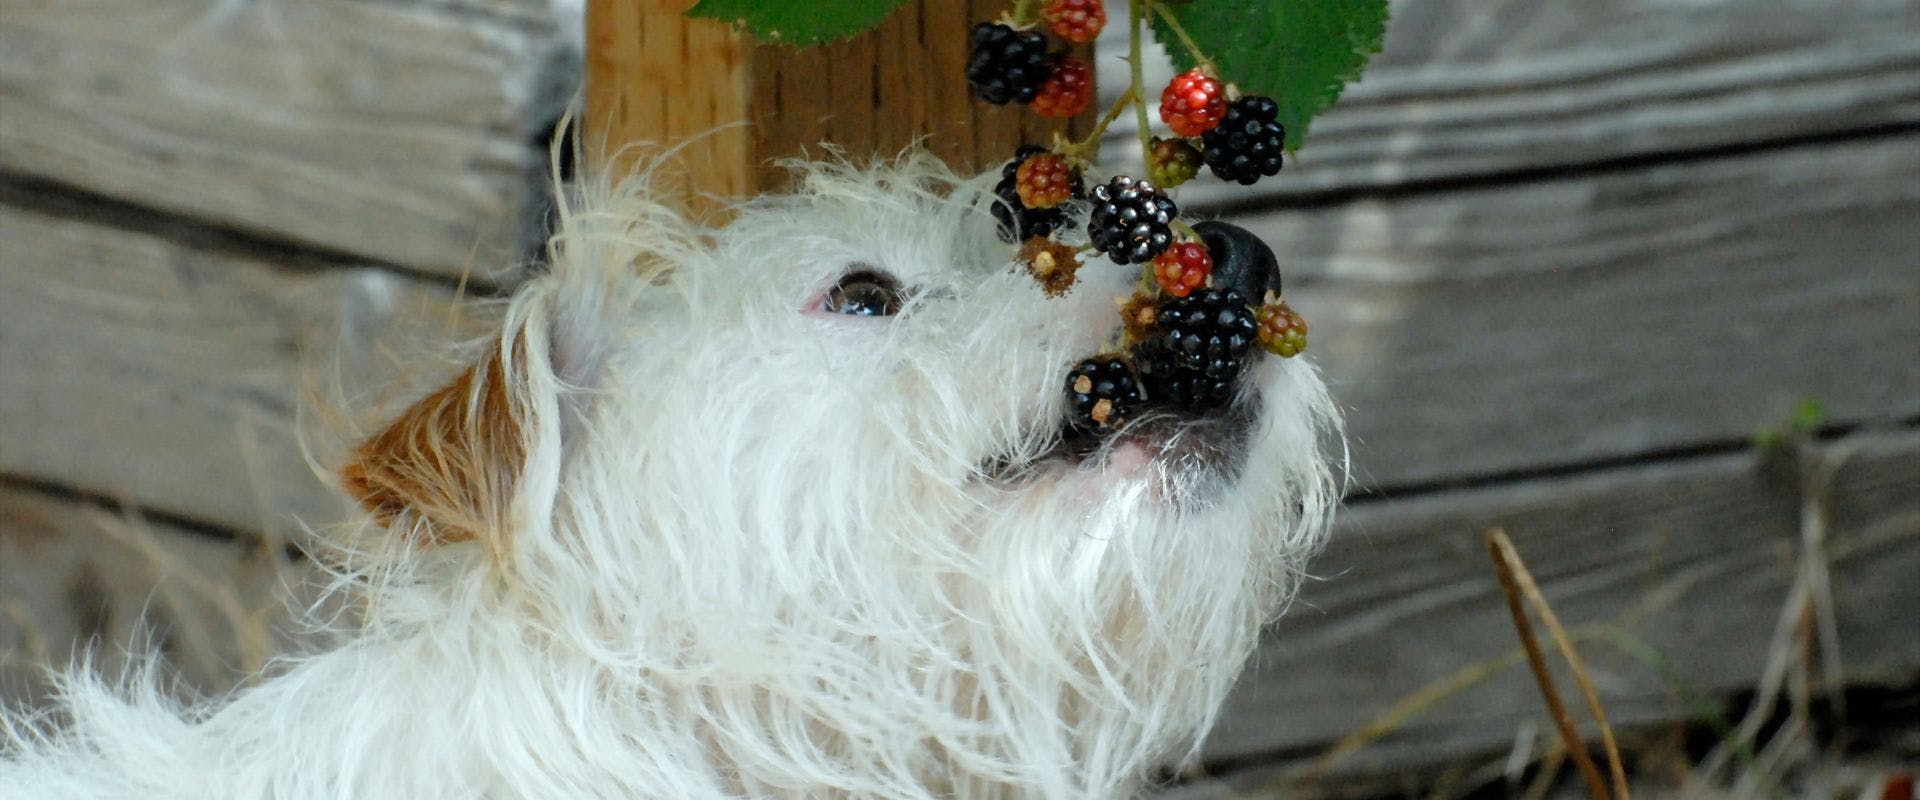 White shaggy dog eating blackberries